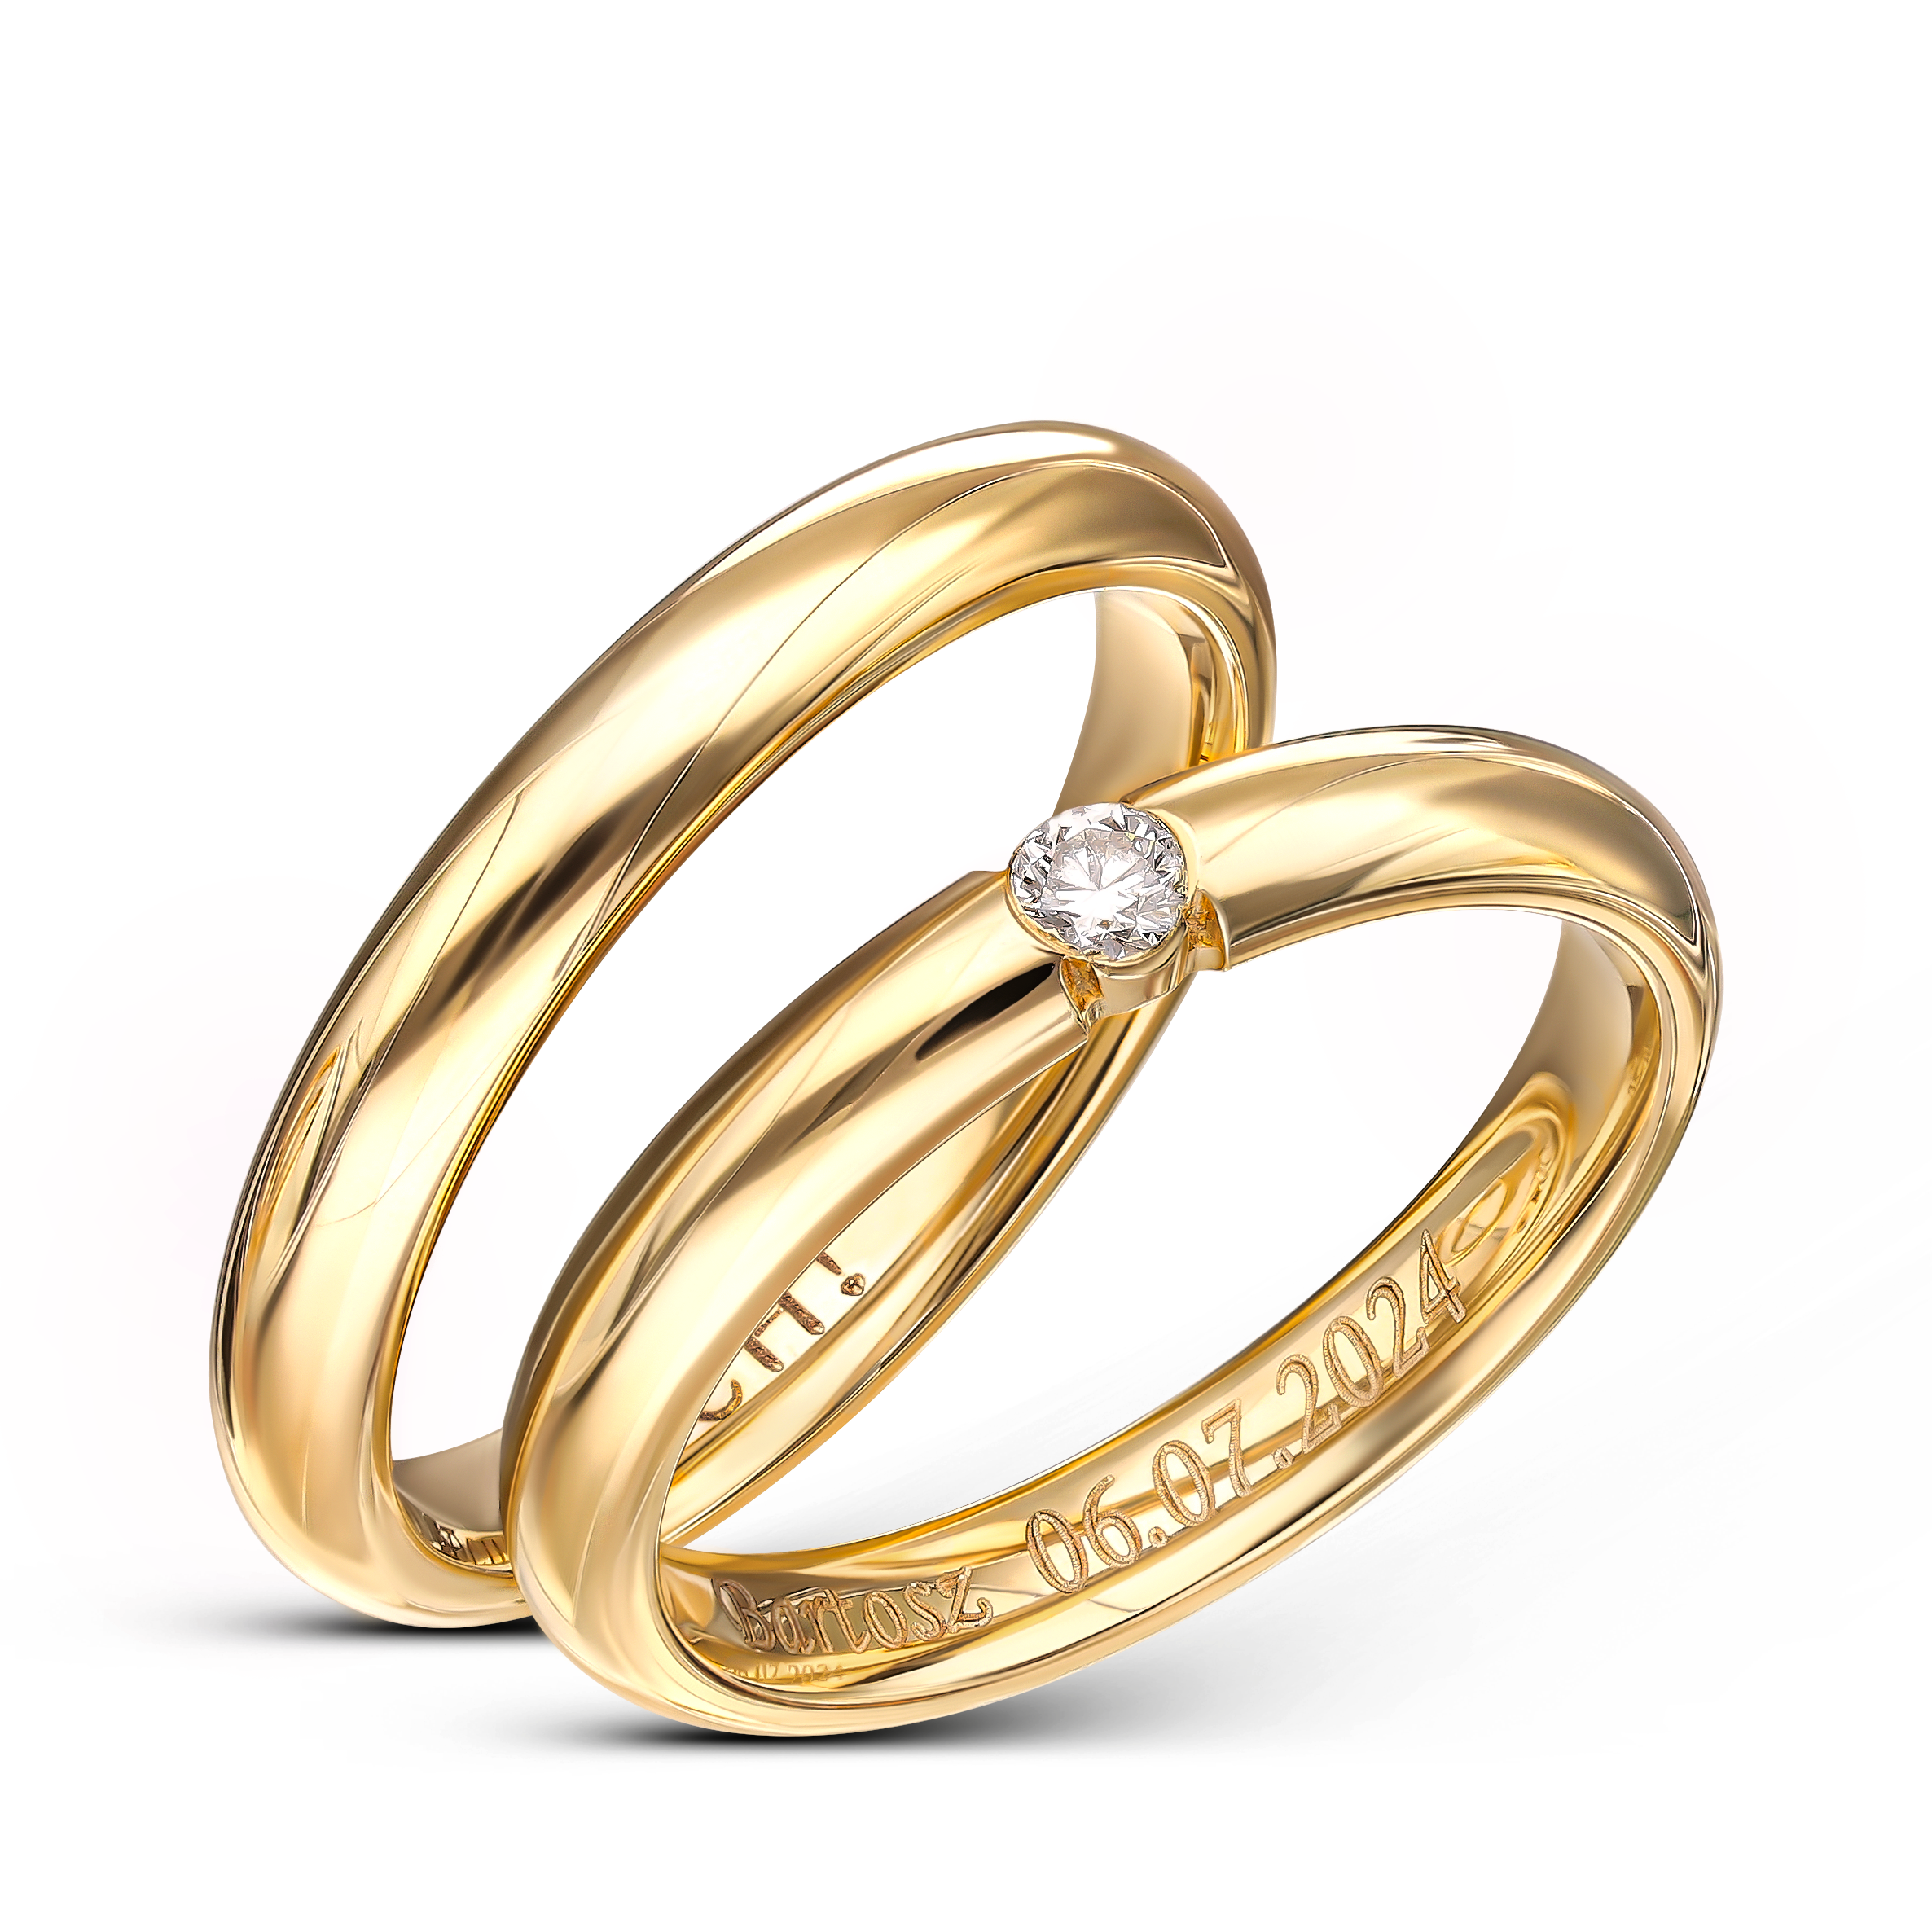 Obrączki ślubne klasyczne złote półokrągłe z kamieniem OCH81O, próba 585